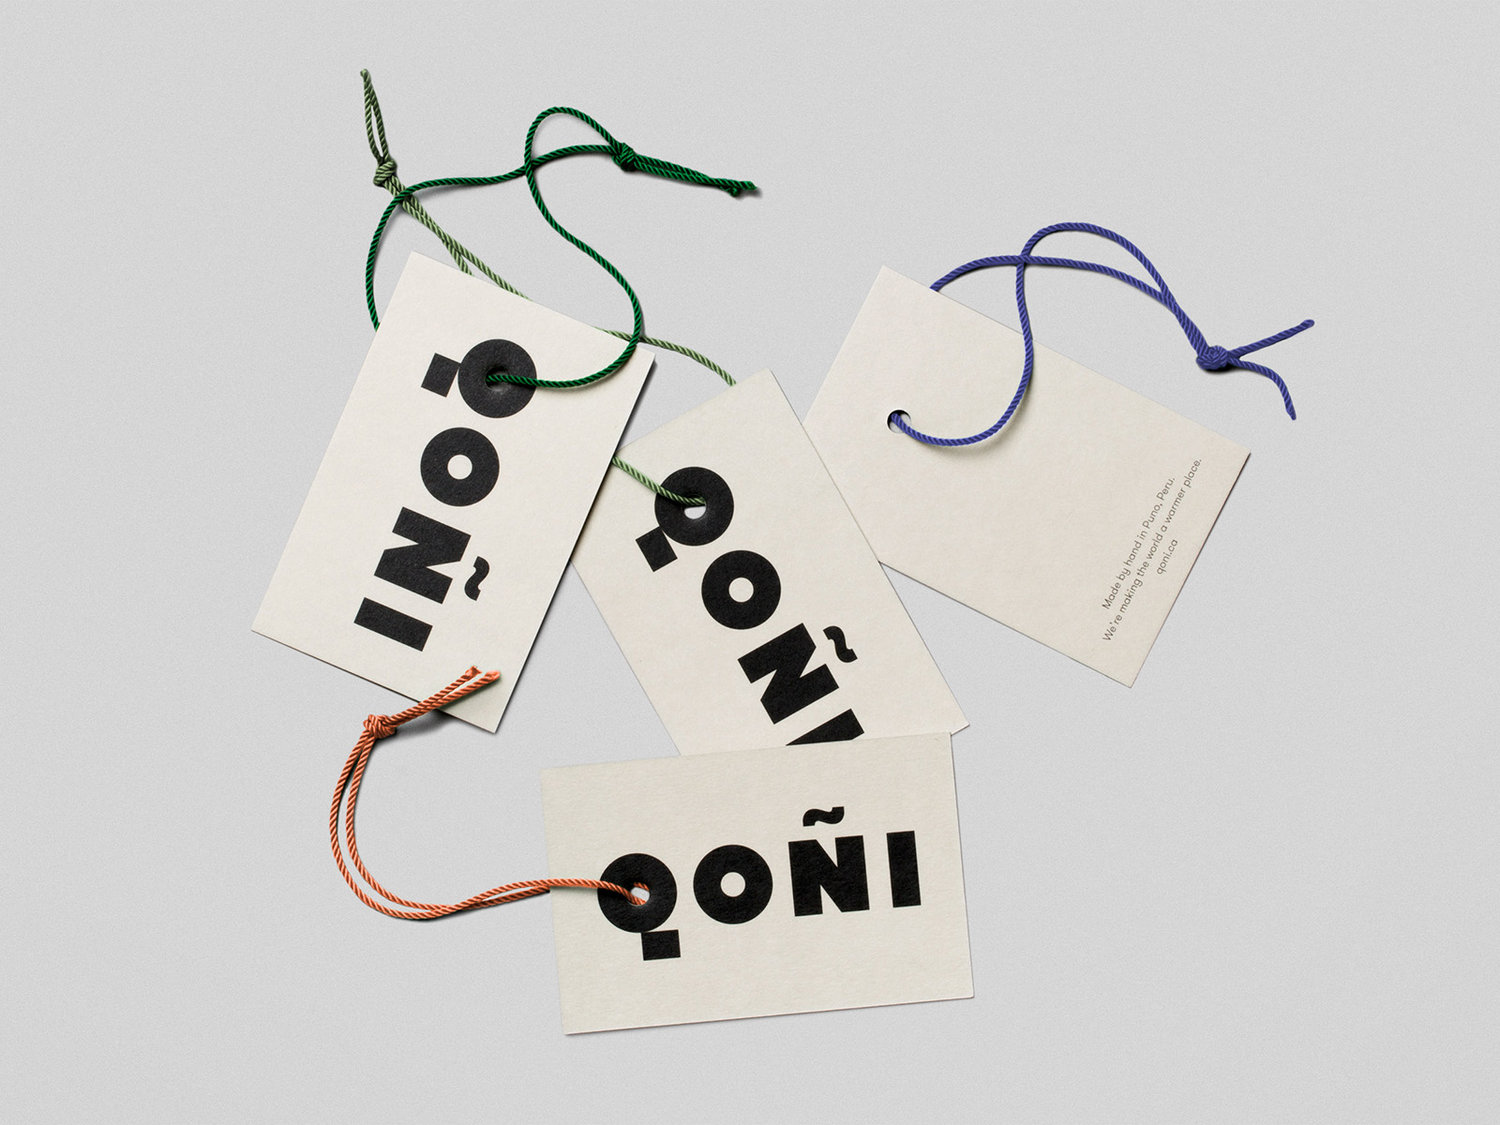 Swing Tag Design – Qoñi by Leo Burnett, Canada